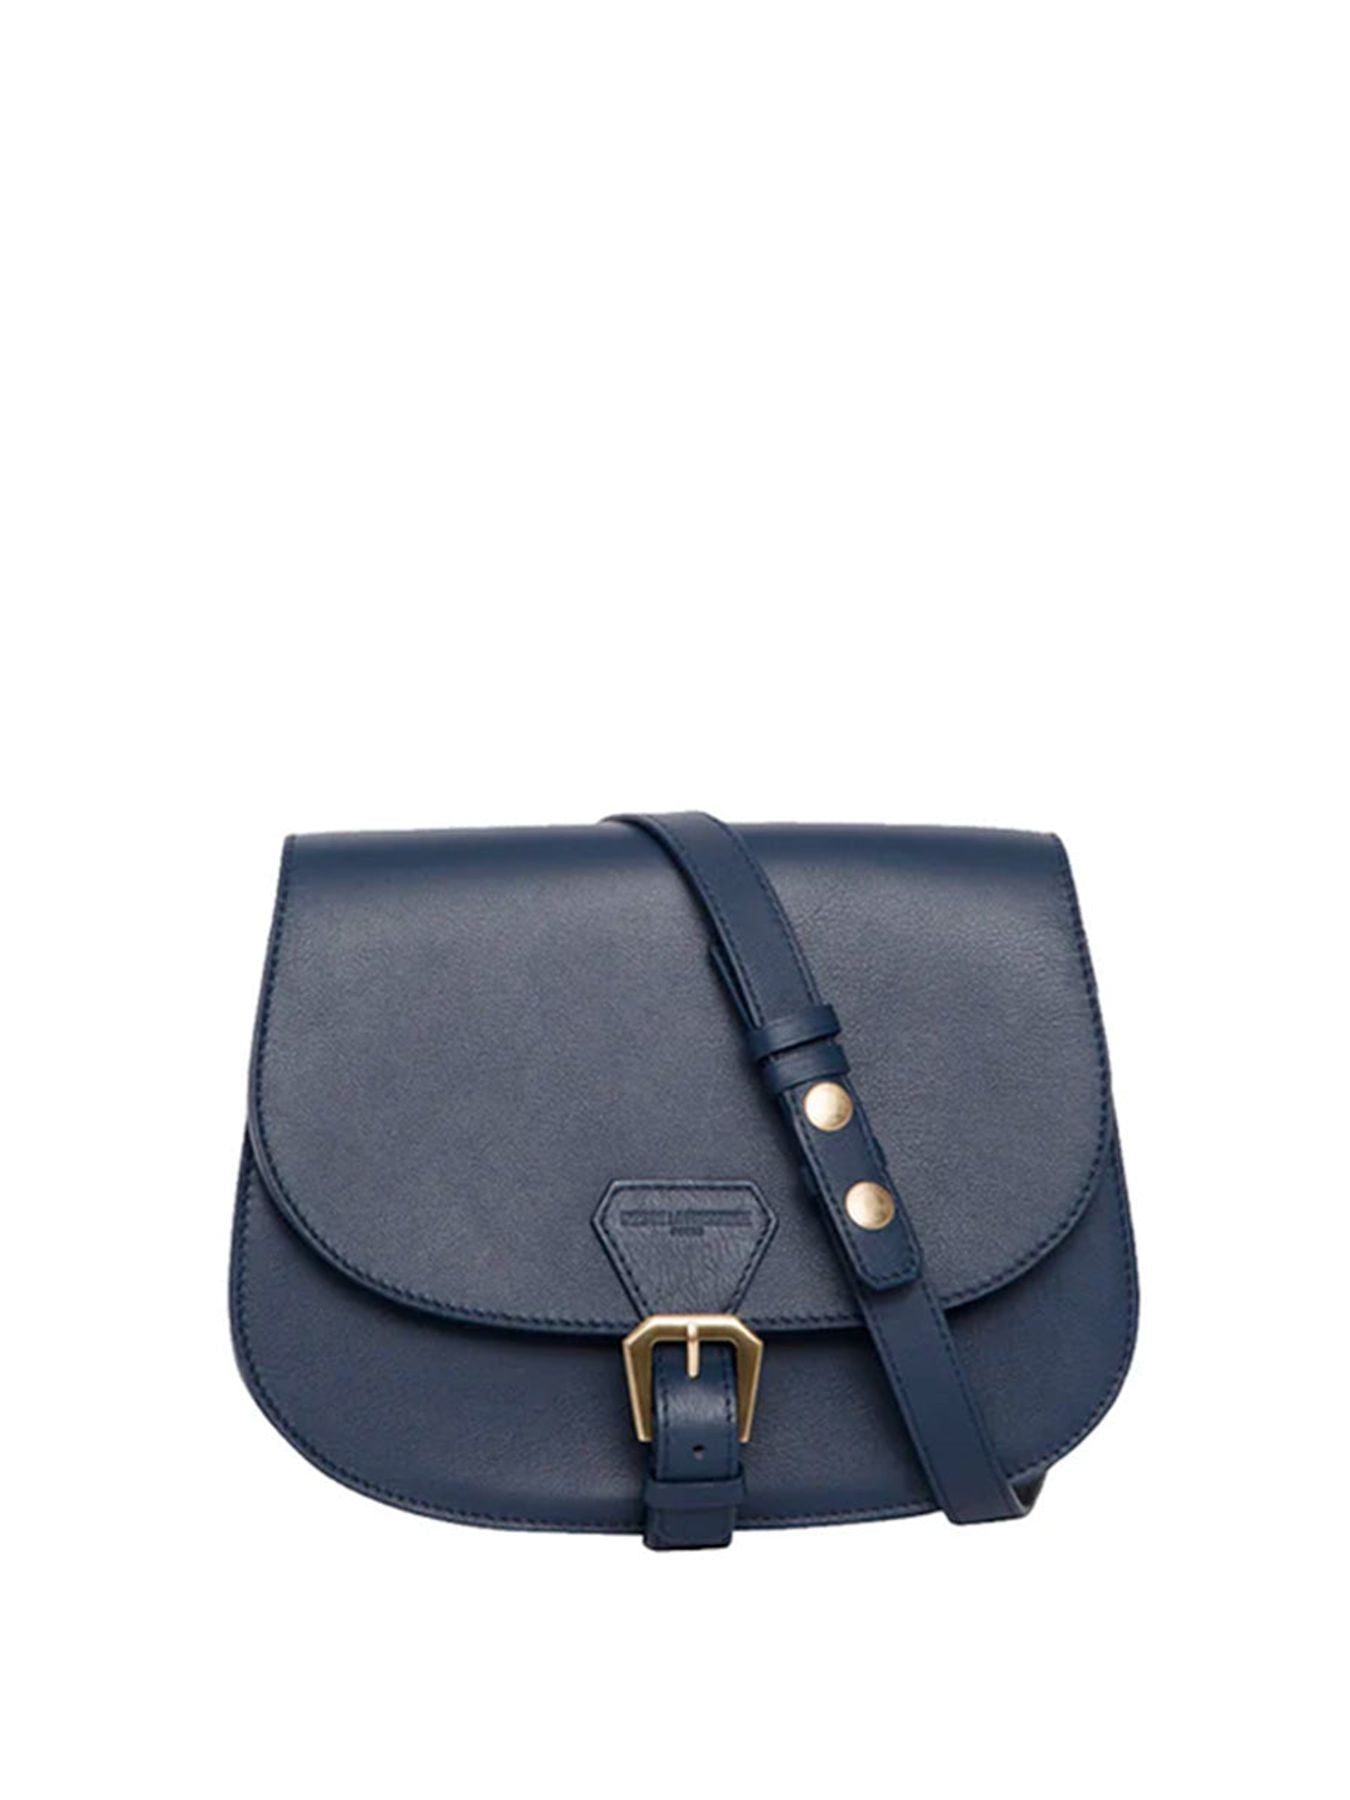 bag-leather-blue-navy bag